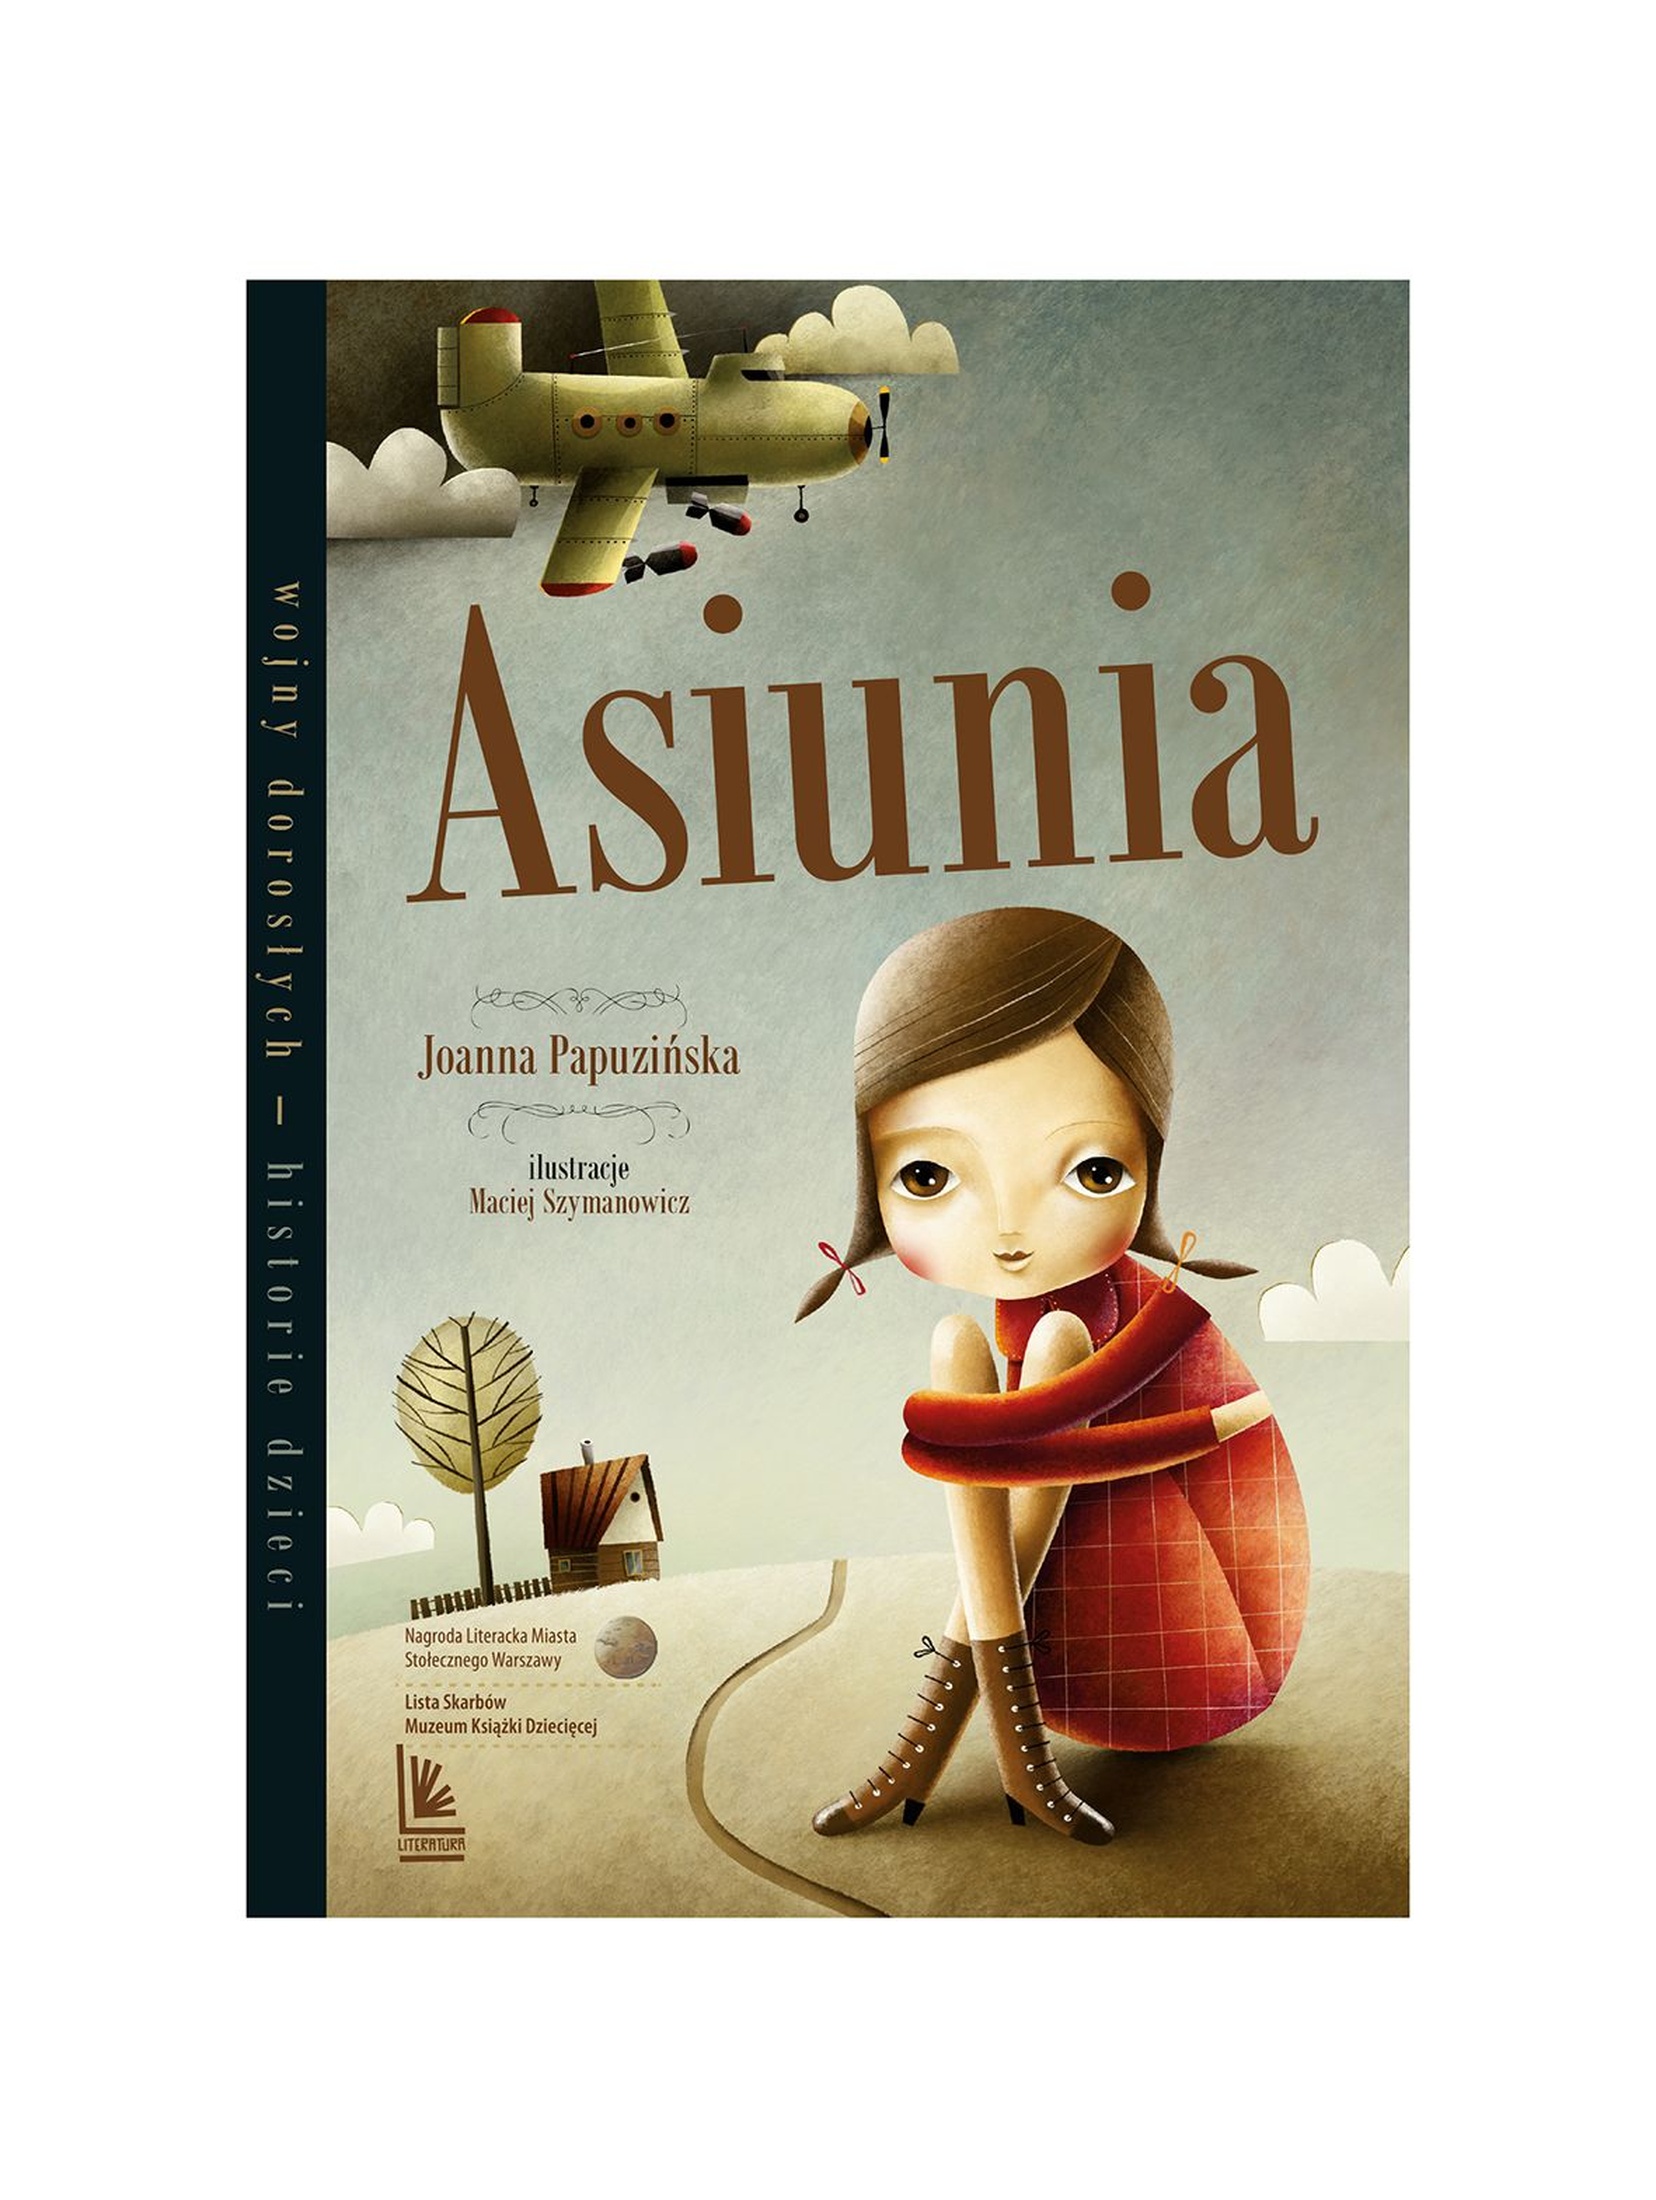 Asiunia - książka dla dzieci